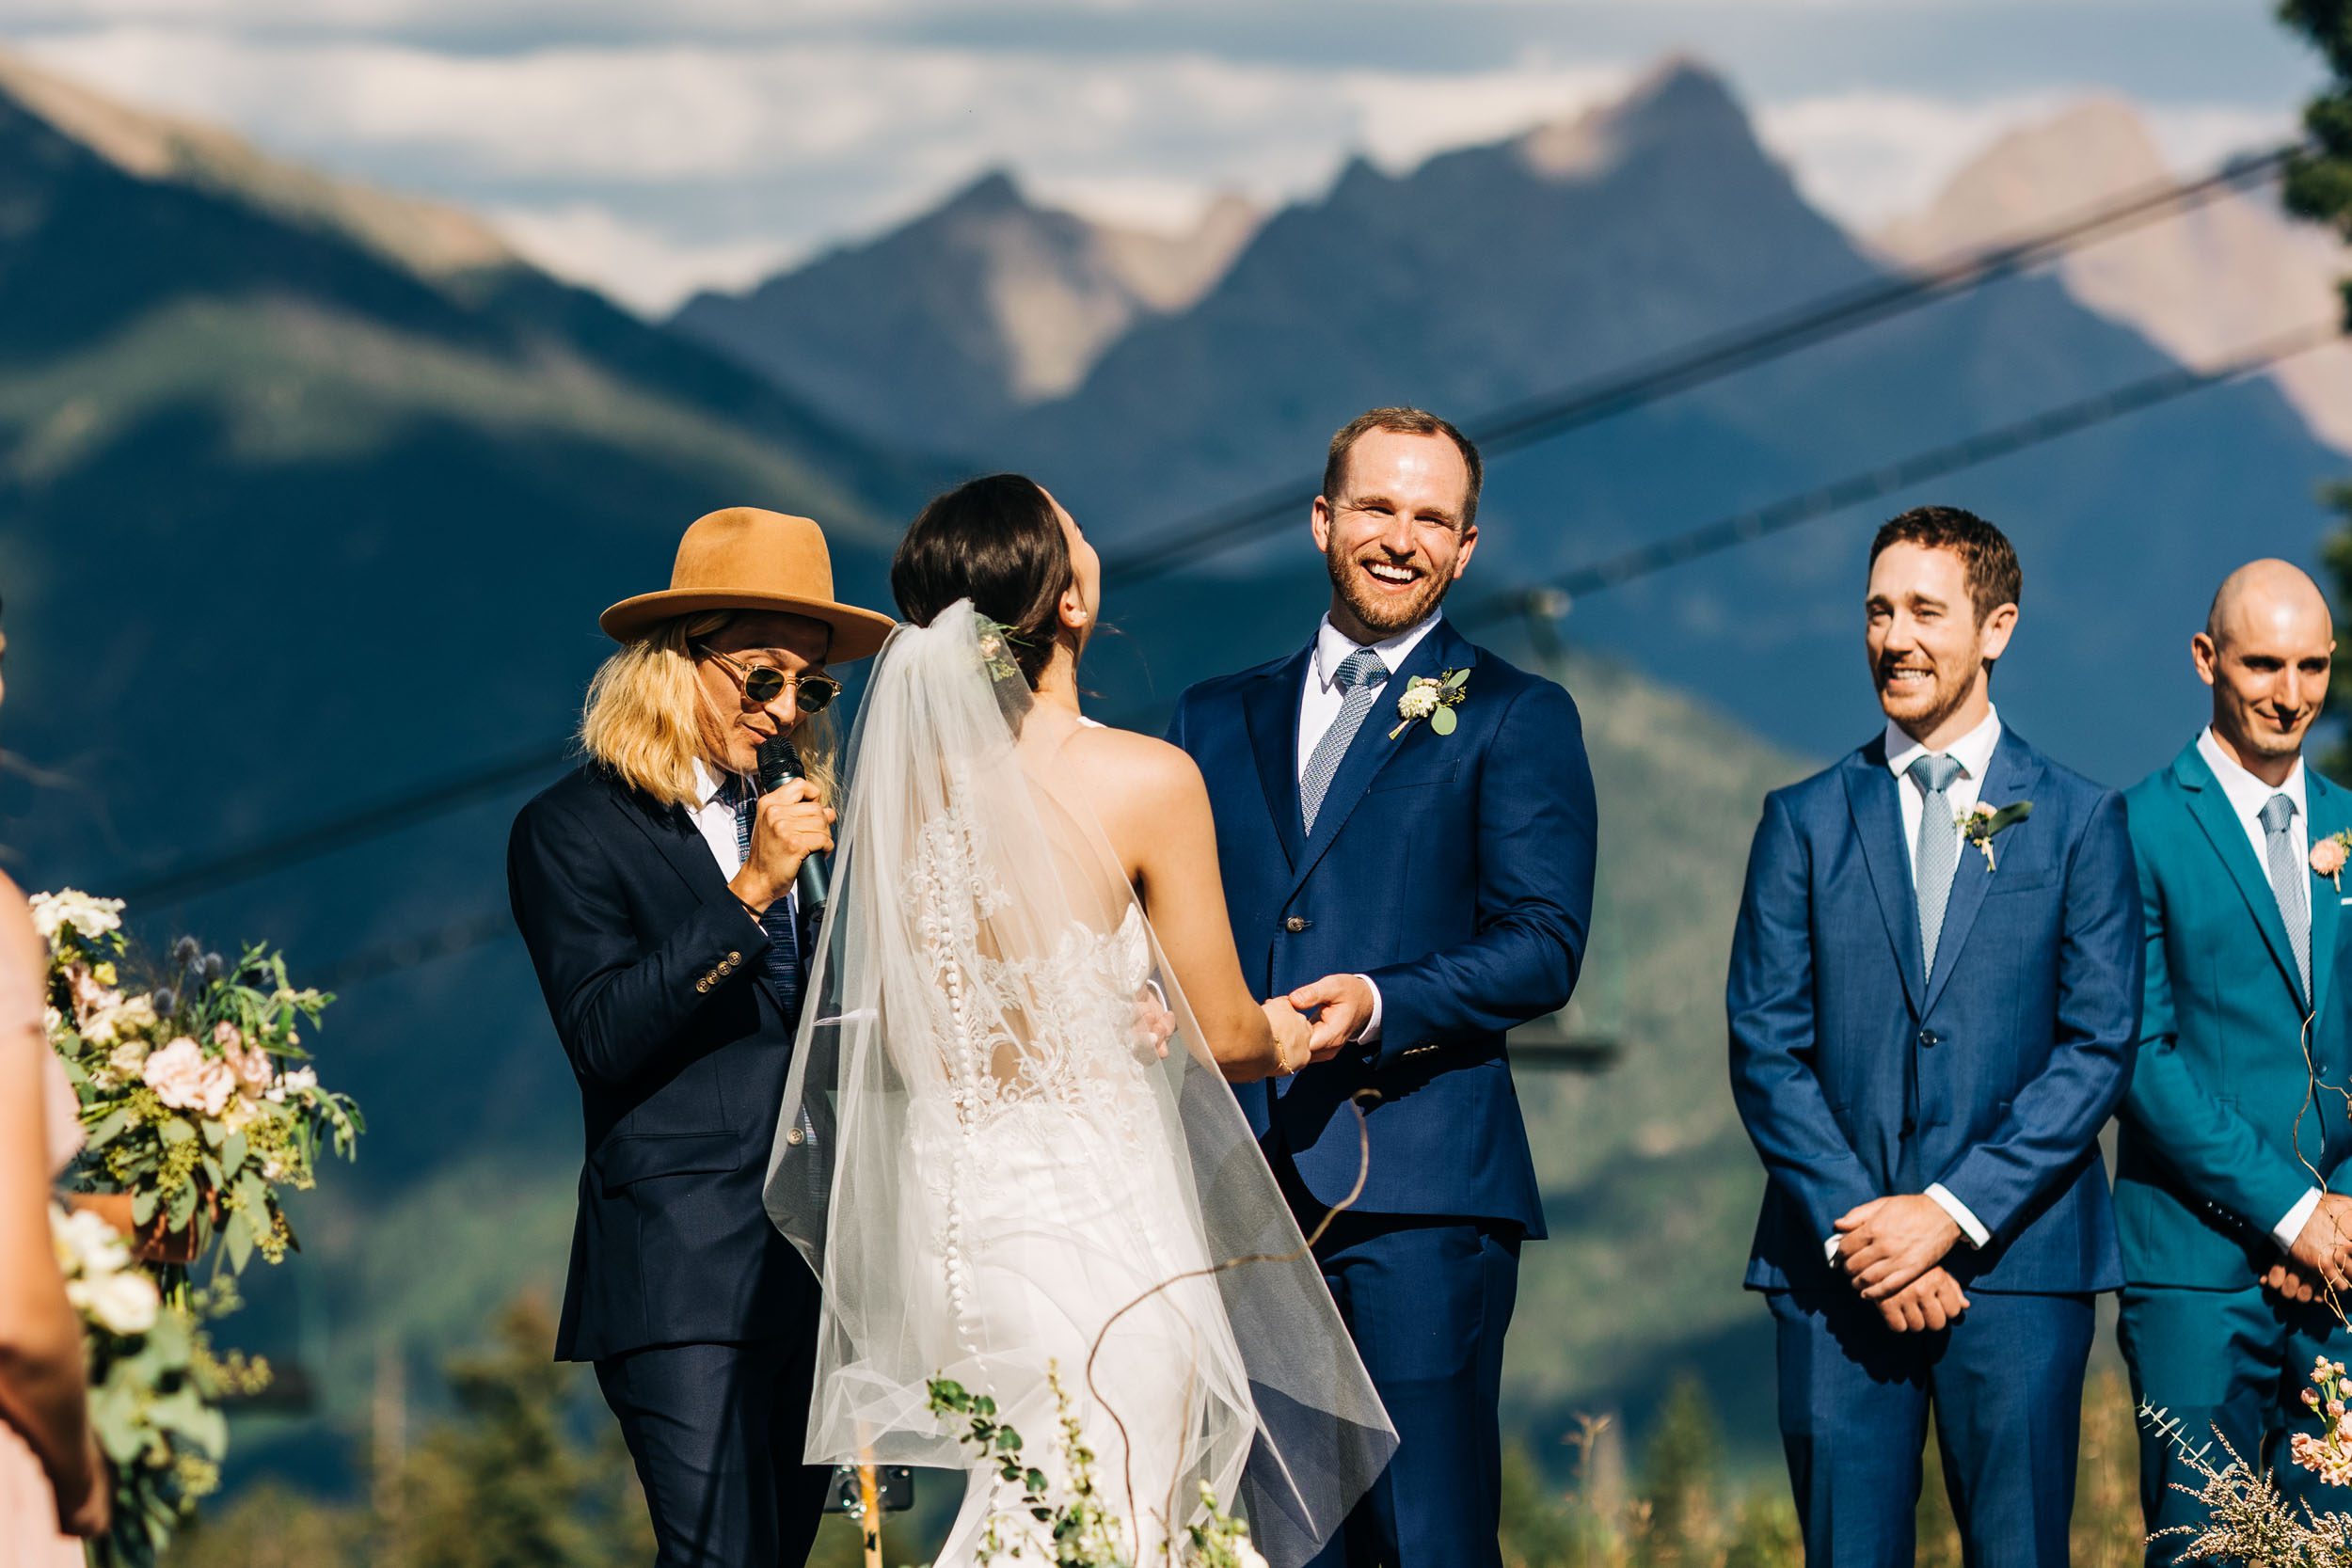 Durango Colorado wedding ceremony photos